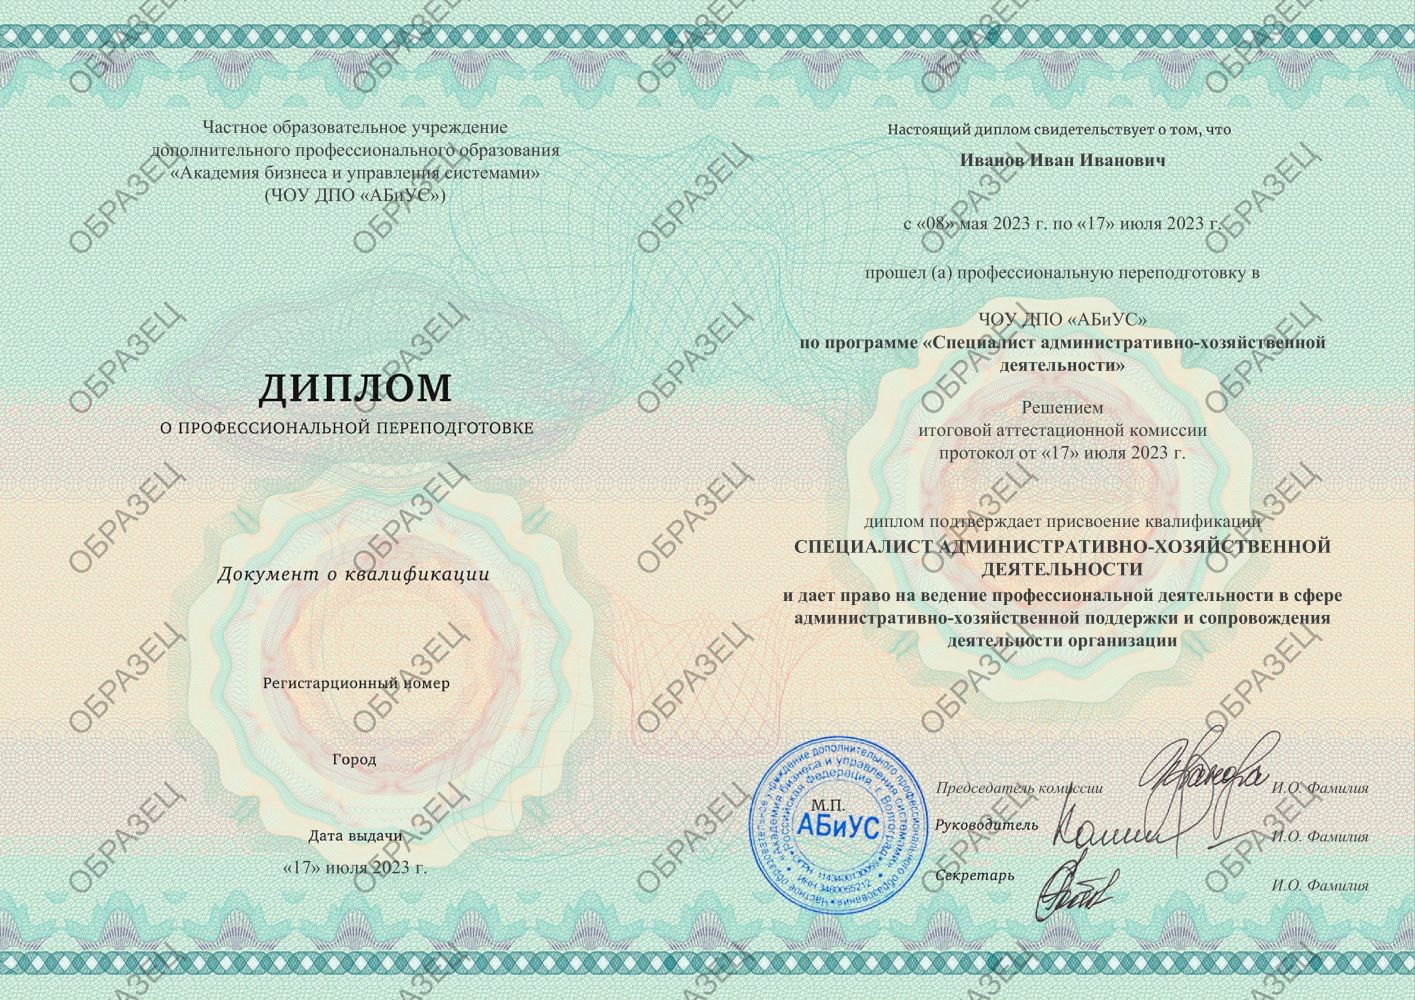 Диплом Специалист административно-хозяйственной деятельности 260 часов 12688 руб.